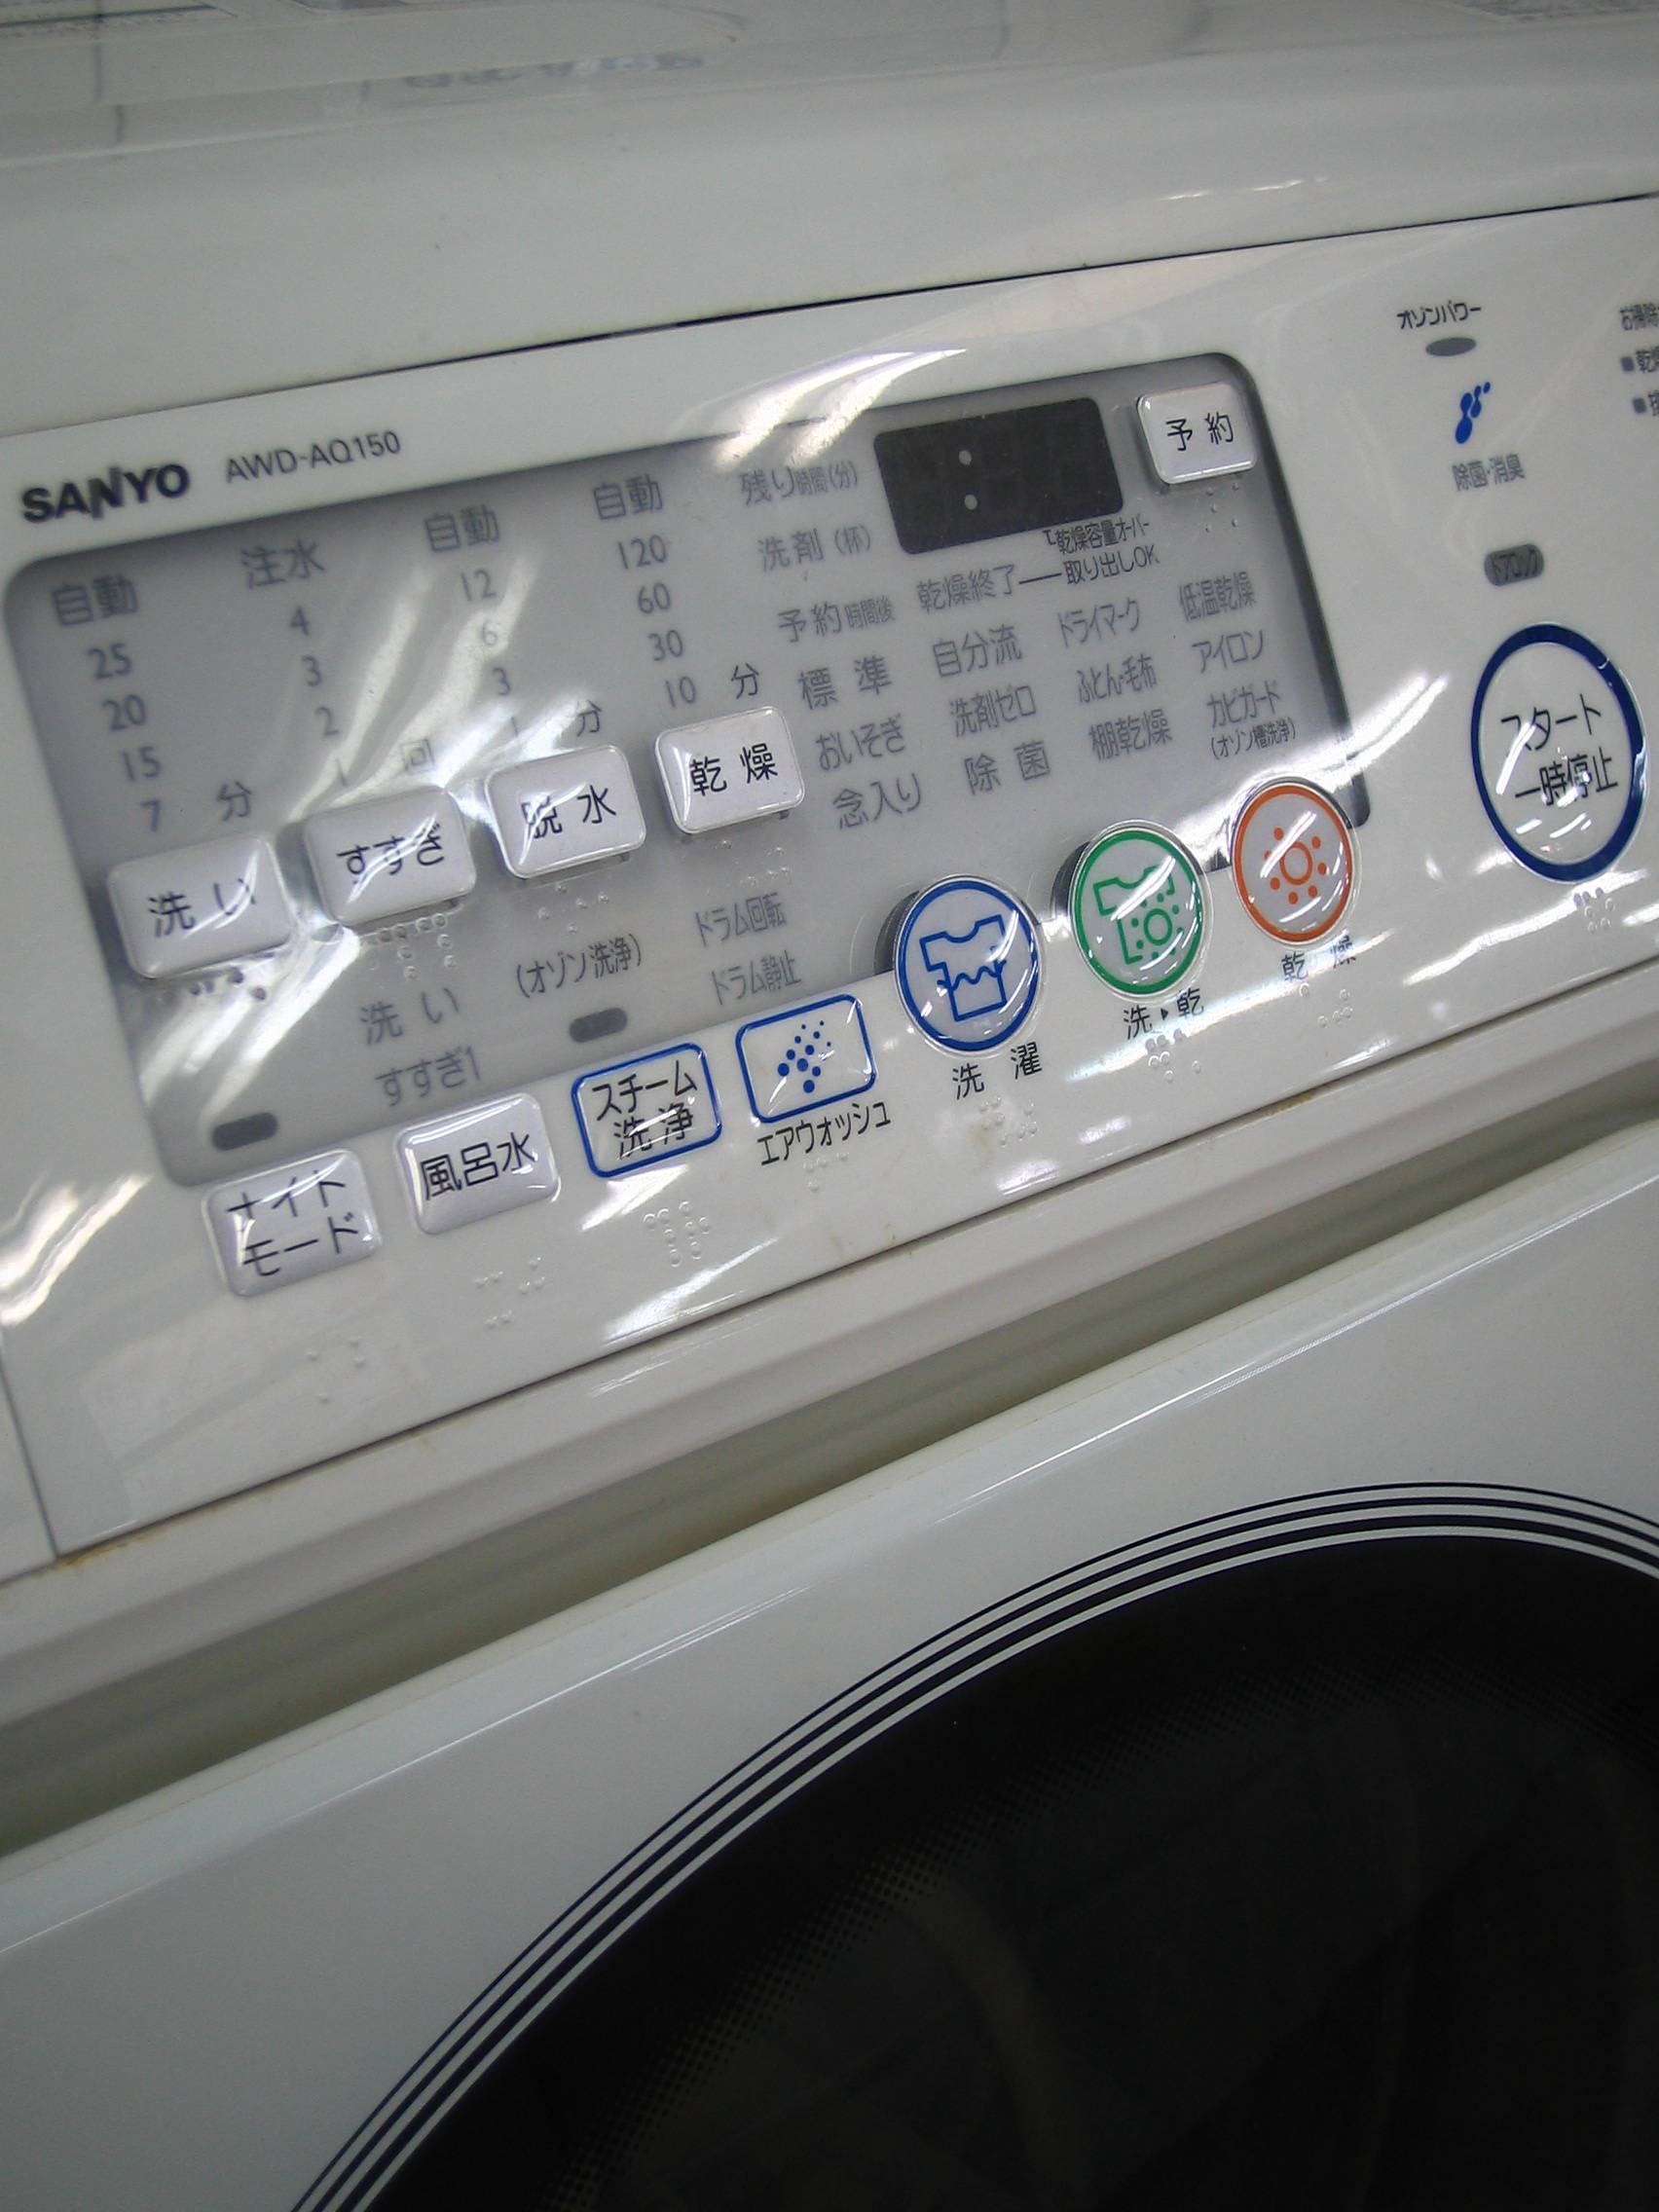 ☆大宮店 ドラム式洗濯乾燥機 SANYO AQUA AWD-AQ150入荷しました